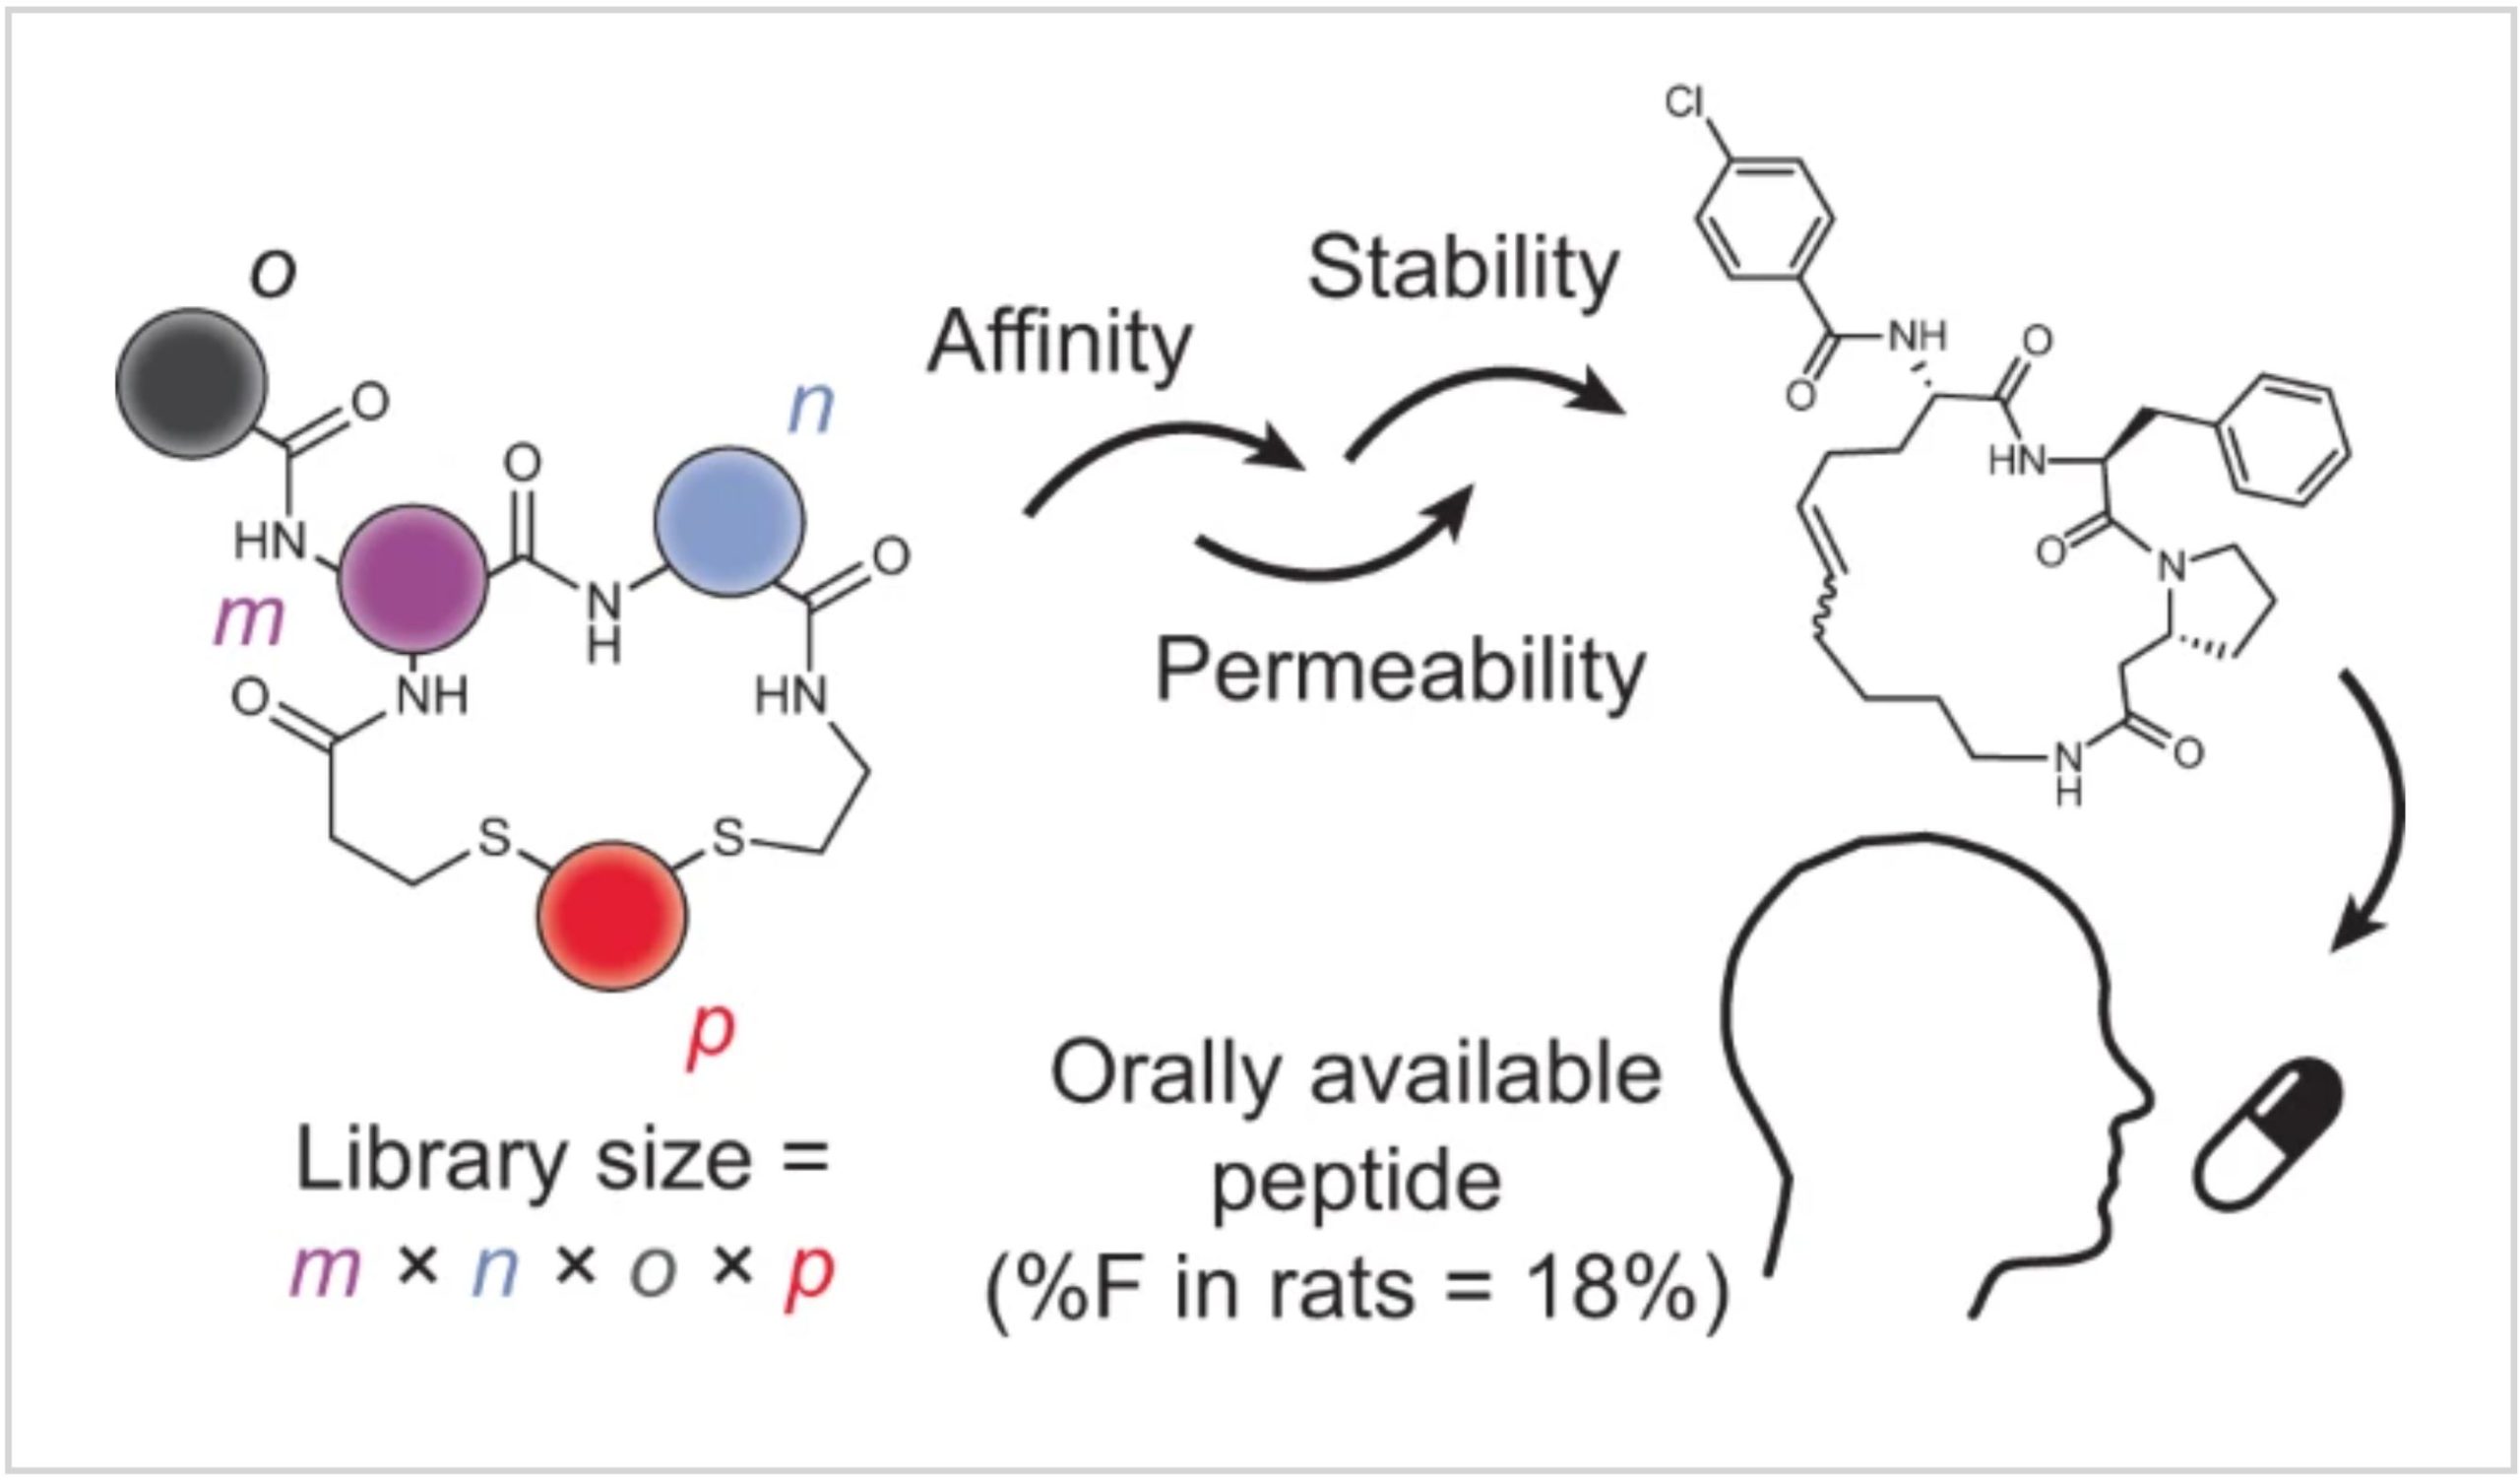 De novo development of small cyclic peptides that are orally bioavailable